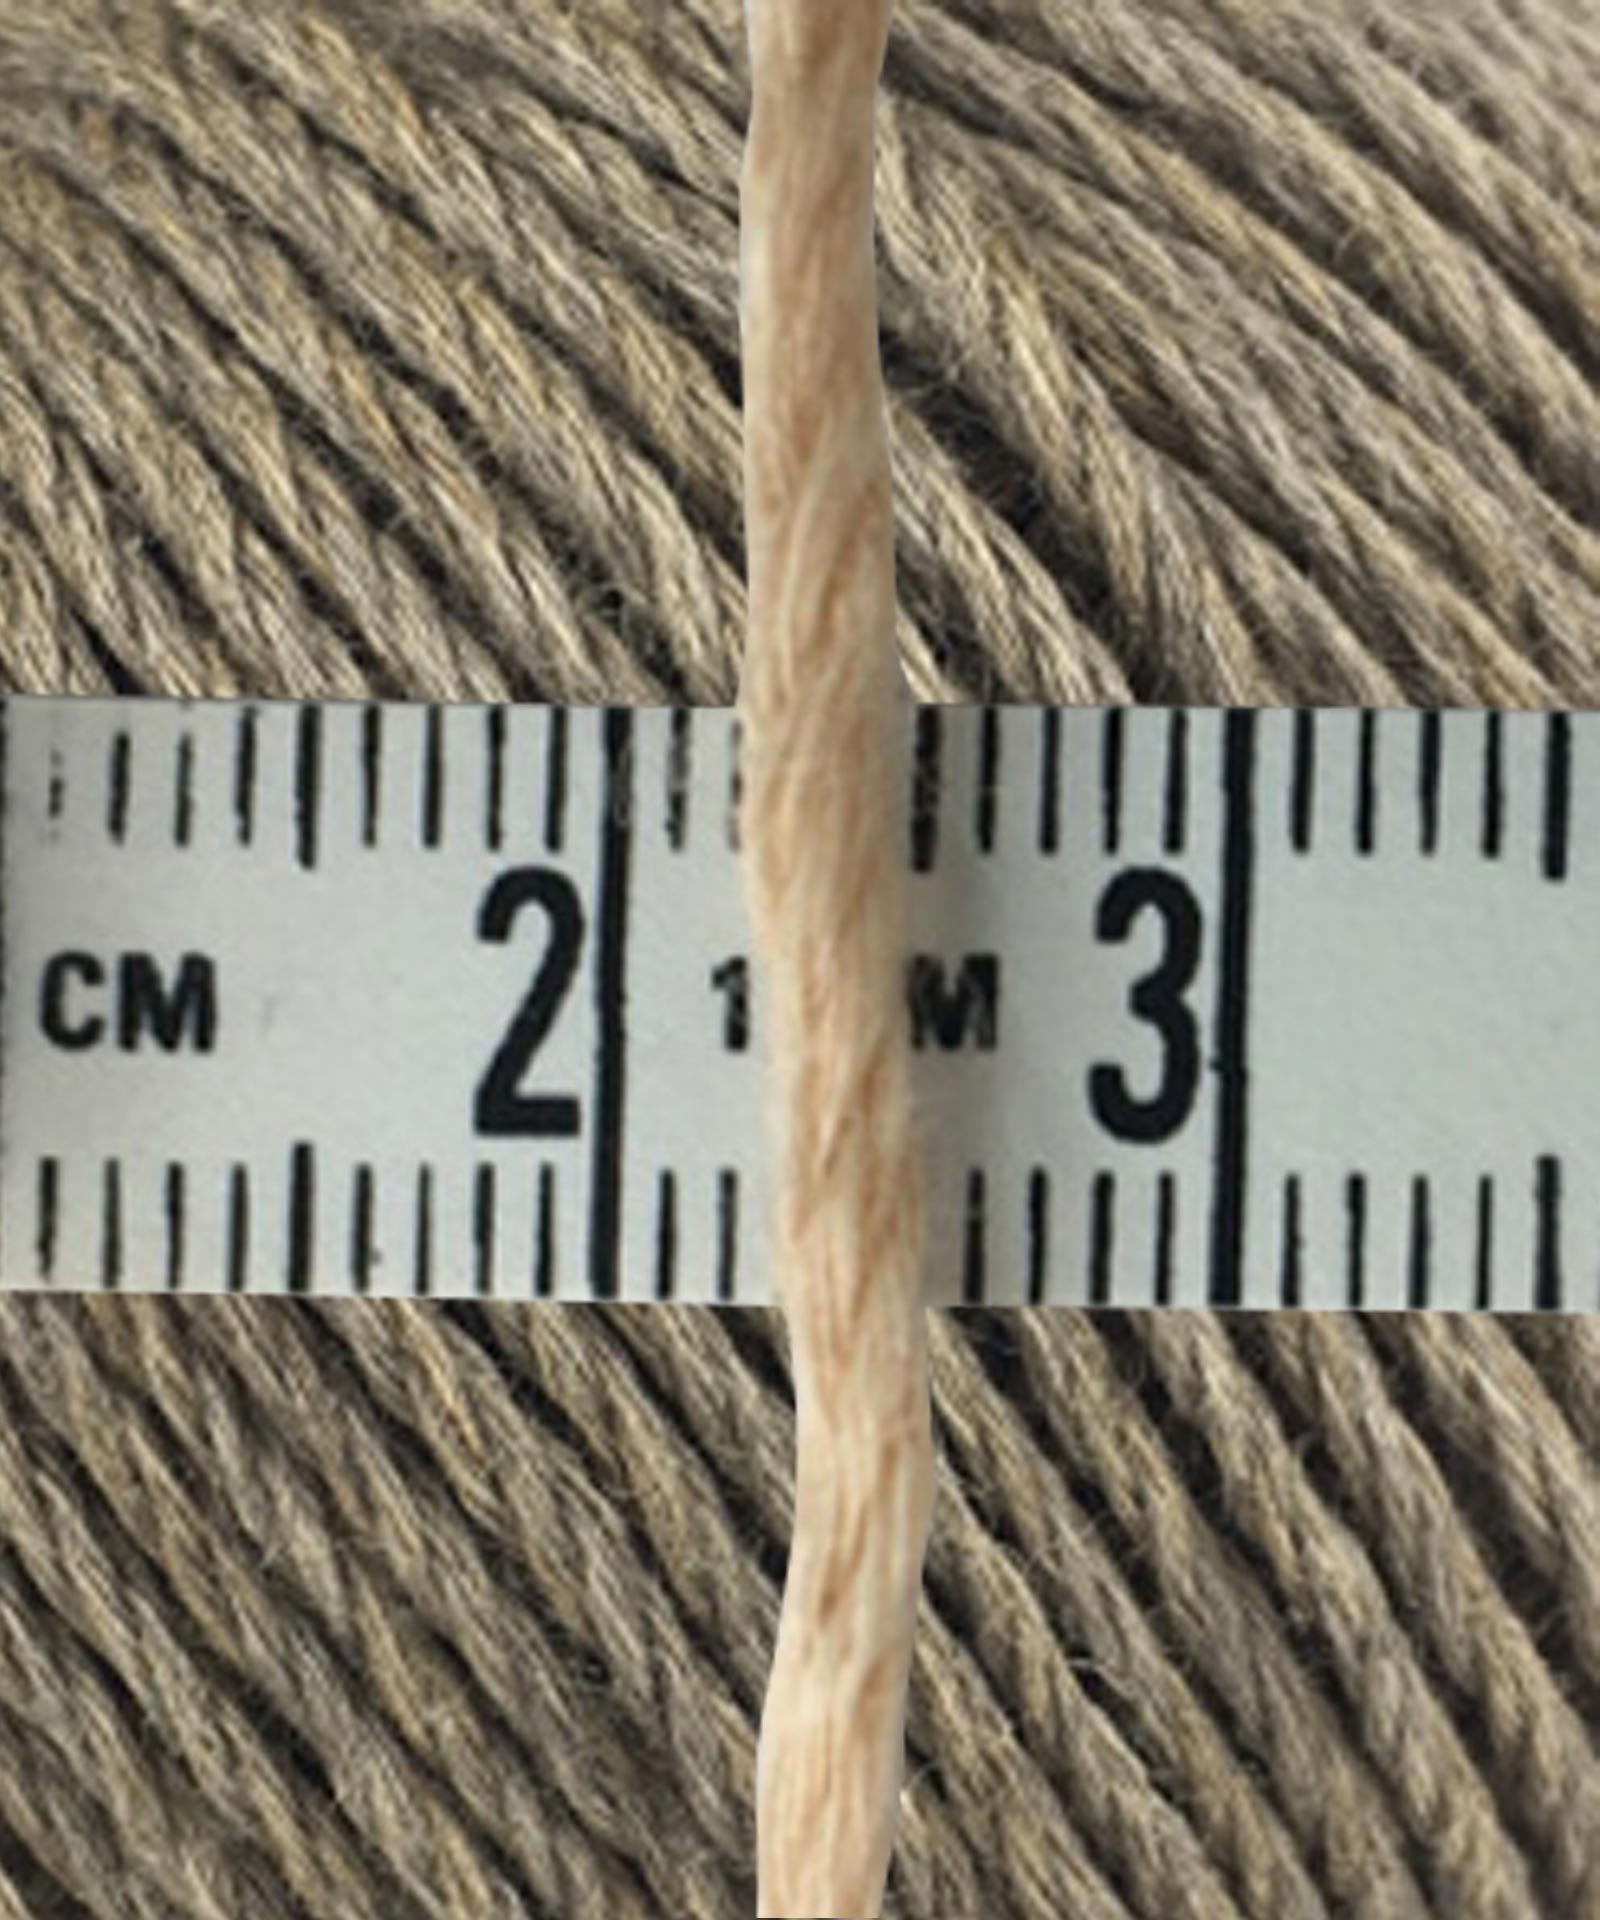 yarn thickness 2~3mm